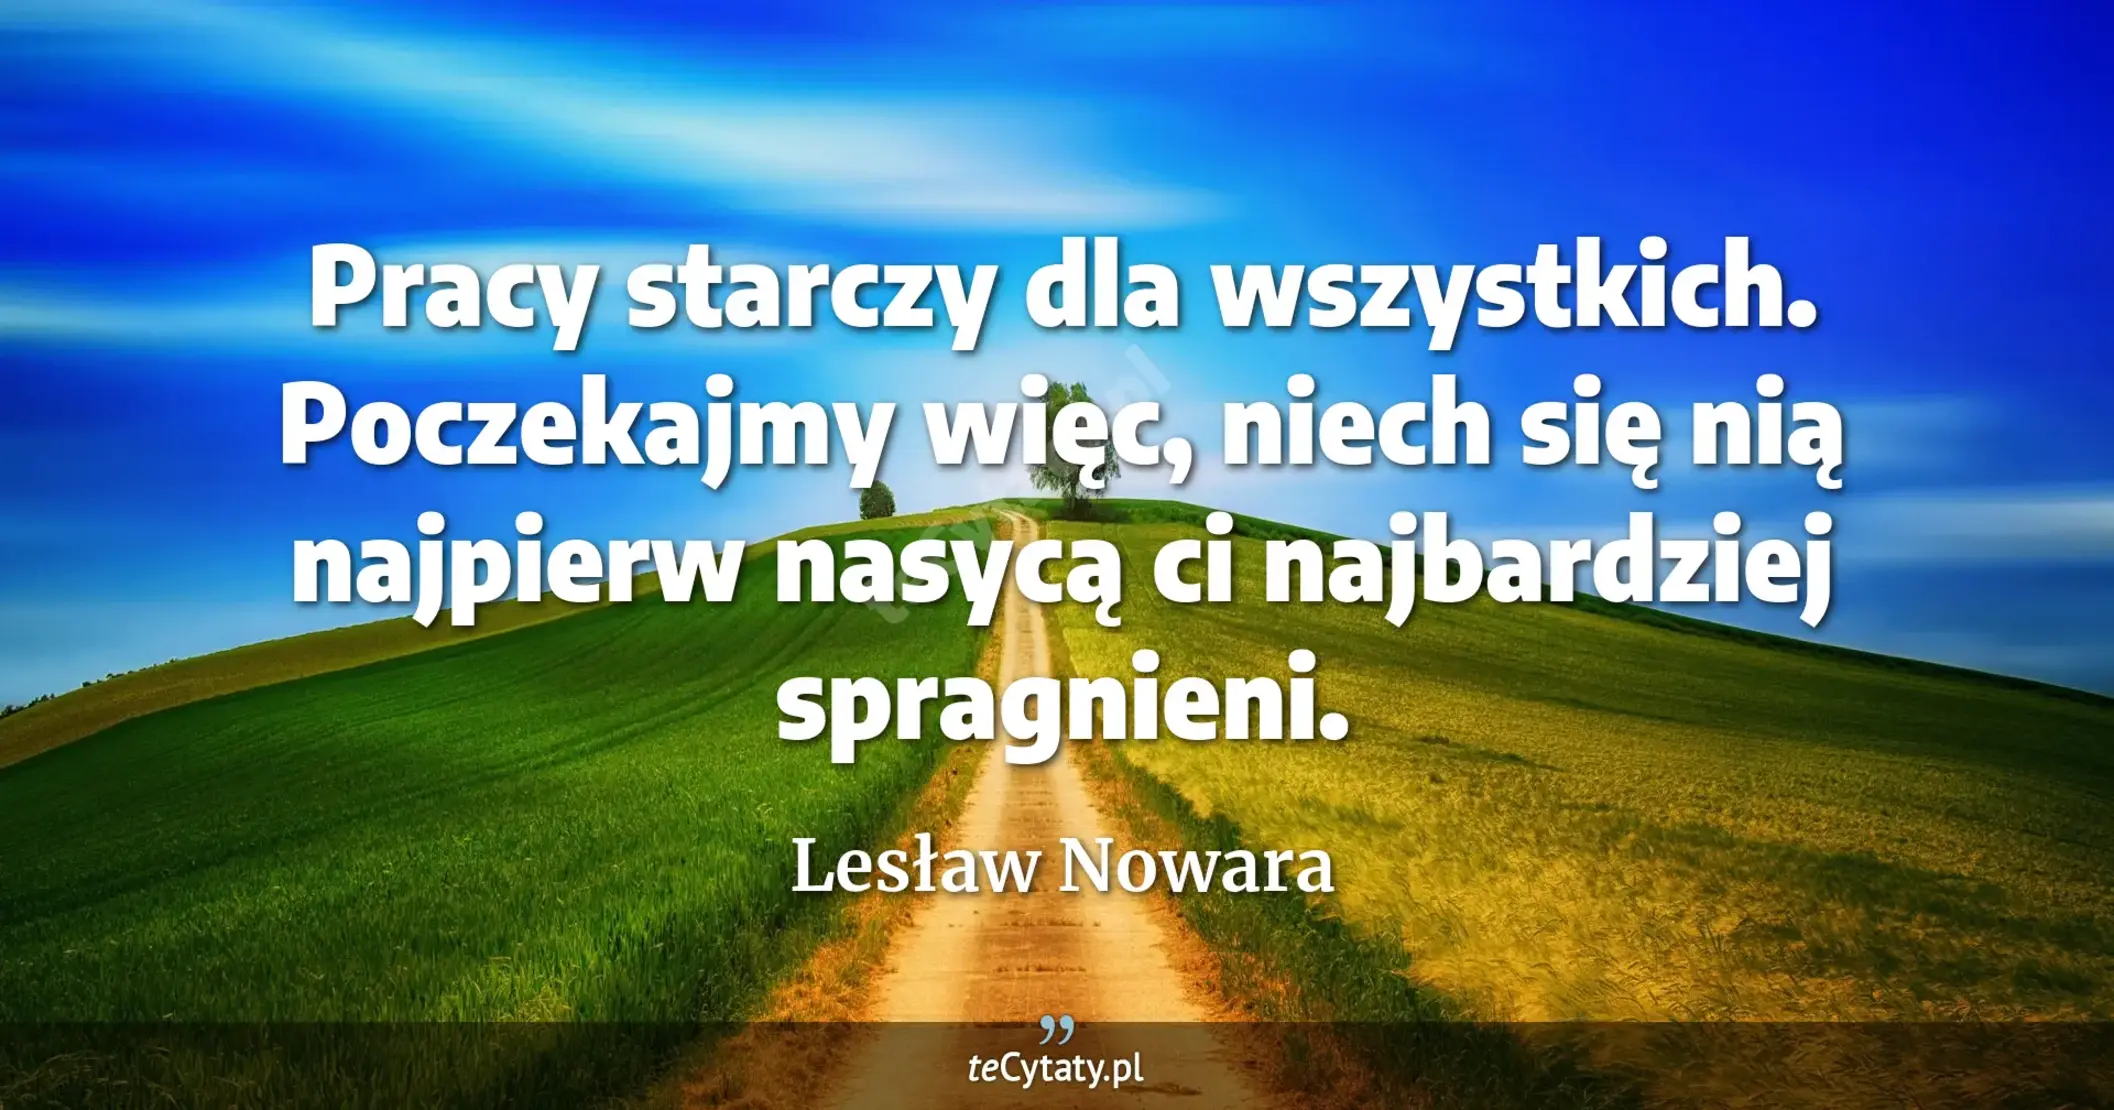 Pracy starczy dla wszystkich. Poczekajmy więc, niech się nią najpierw nasycą ci najbardziej spragnieni. - Lesław Nowara